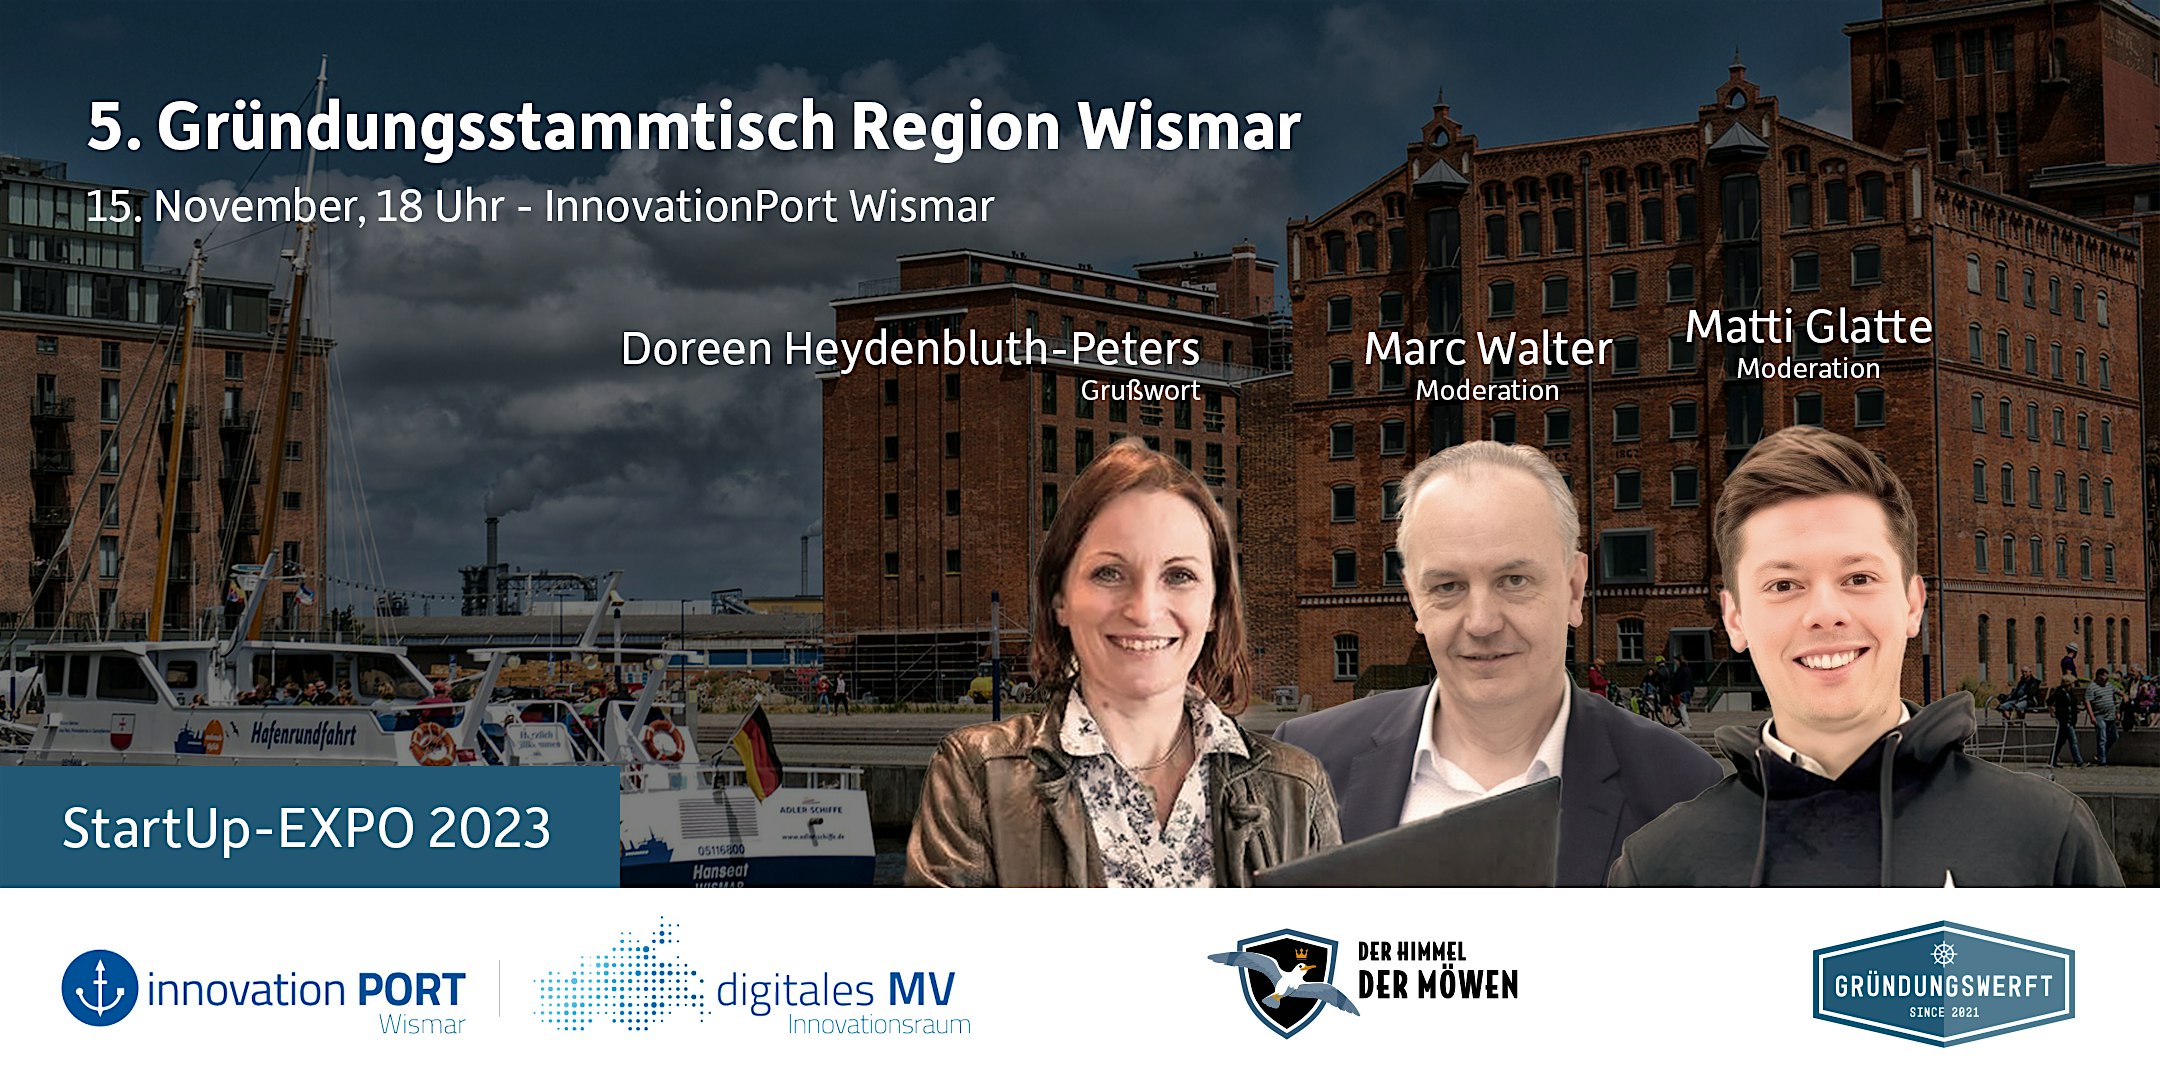 Veranstaltungsbild für die Veranstaltung 5. Gründungsstammtisch Region Wismar mit dem InnovationPort